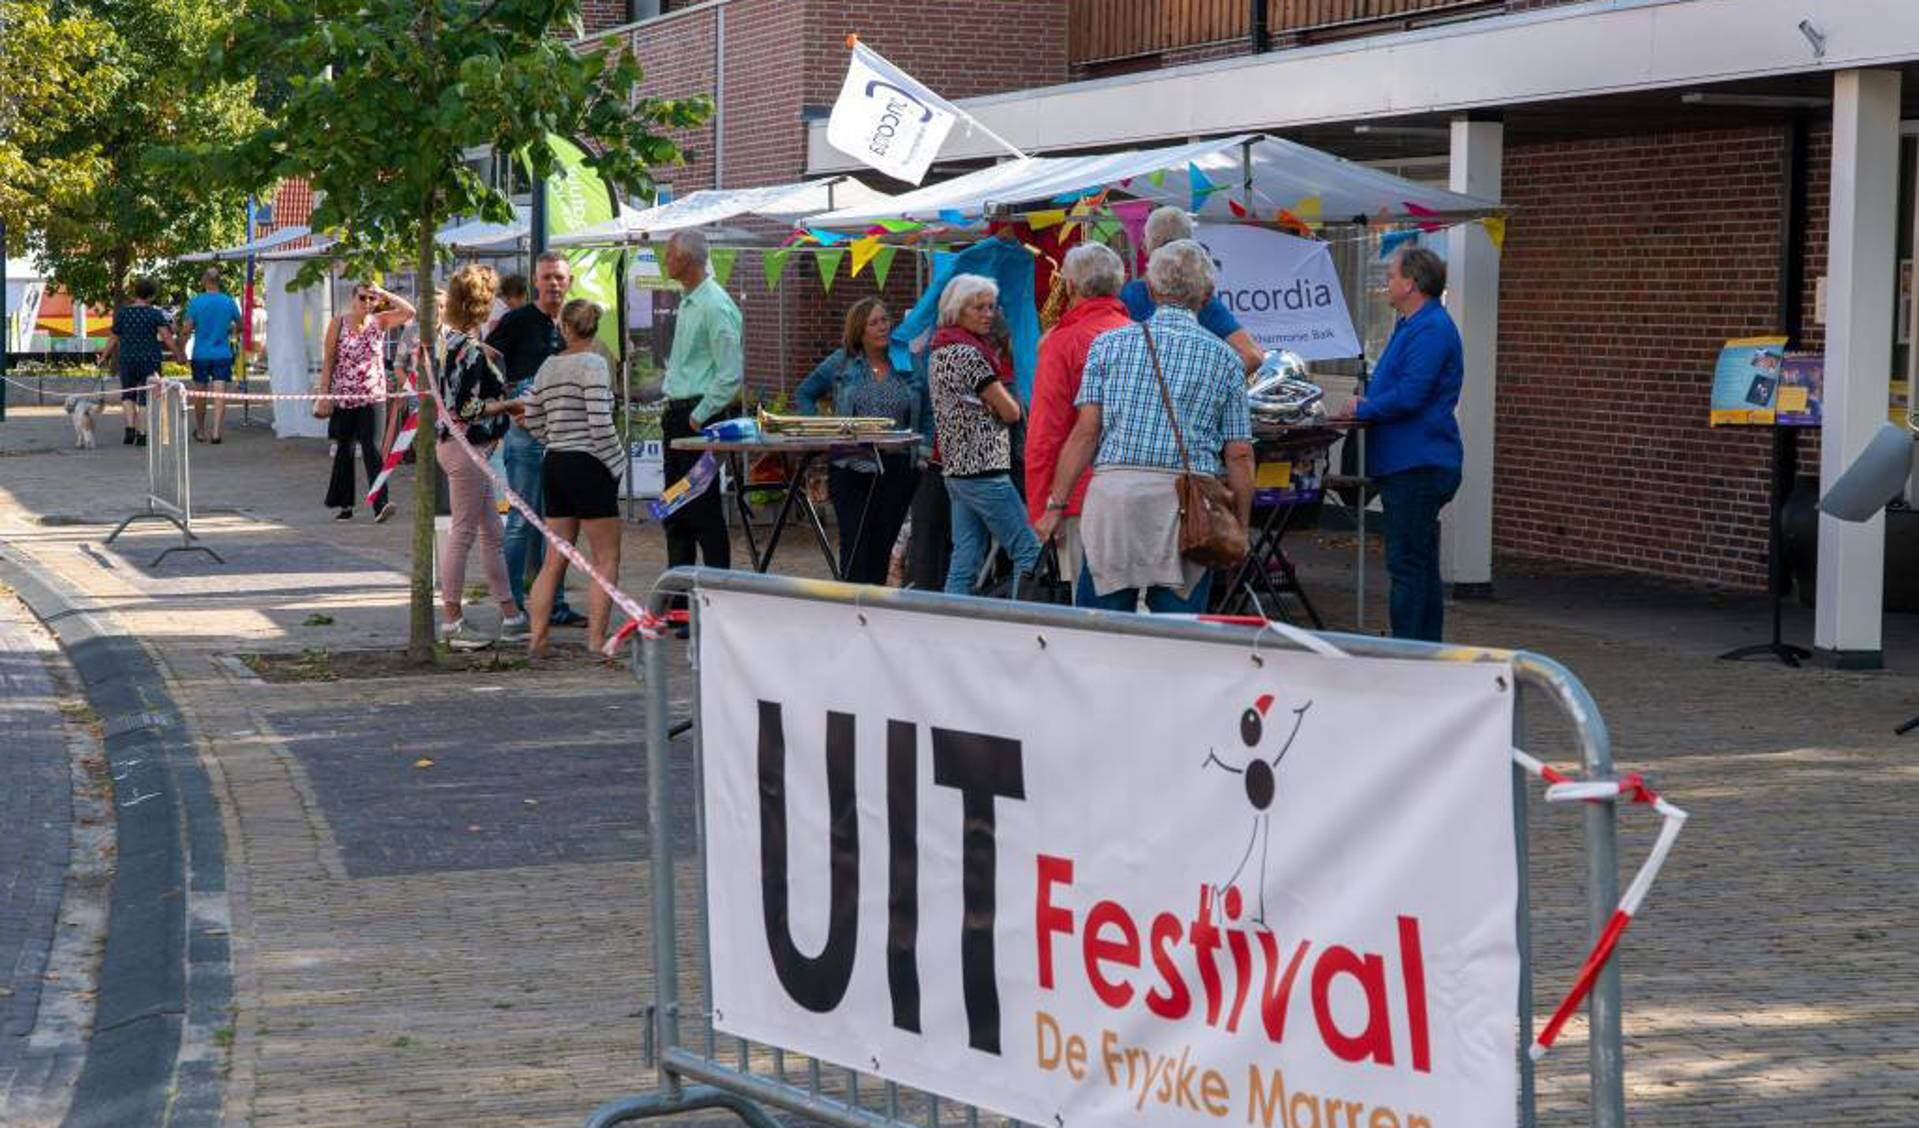 UITfestival De Fryske Marren zoekt cultuurmakers Foto Folkert Folkertsmat 